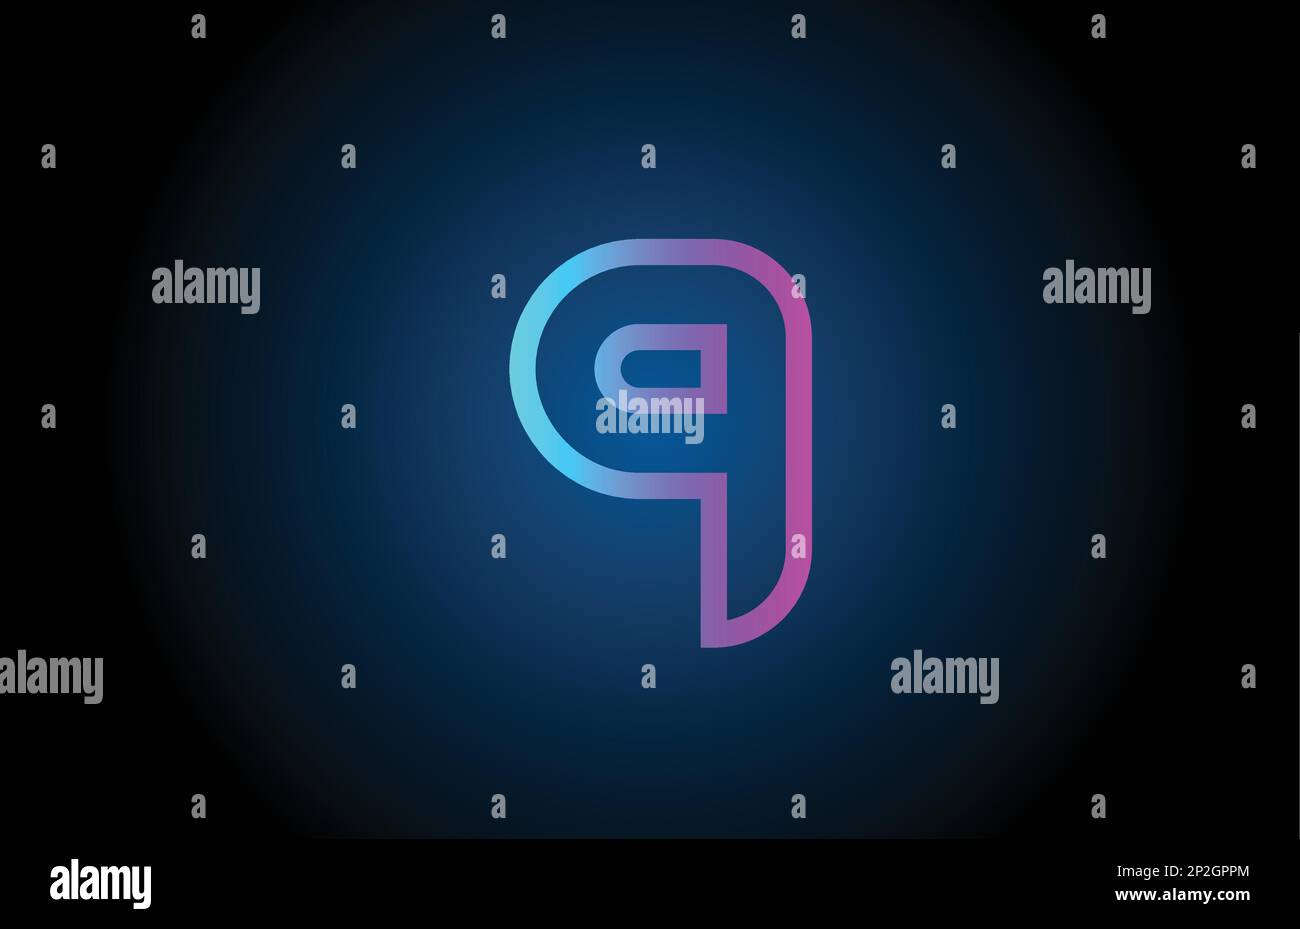 Pinkfarbene Linie, Logo mit 9 Ziffern und Symboldesign. Kreative Vorlage für Unternehmen und Unternehmen Stock Vektor